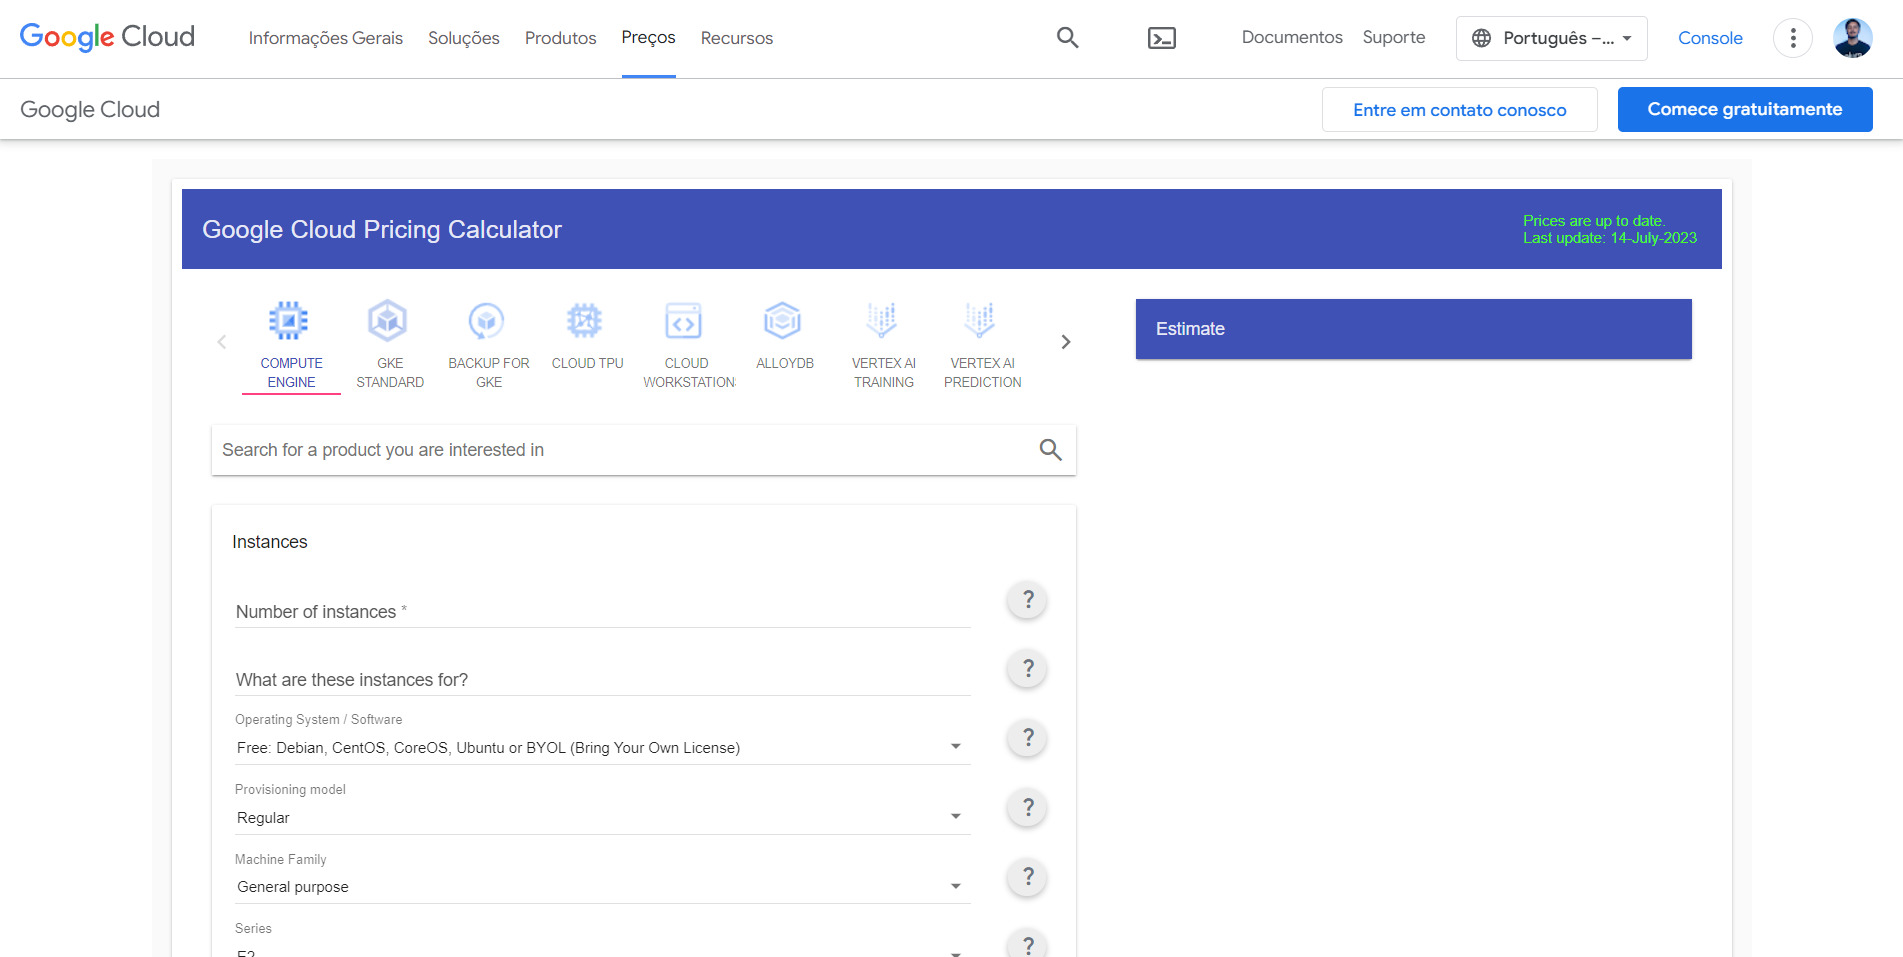 Captura de tela do site “Google Cloud Pricing Calculator”. No corpo da página, há um formulário para selecionar o produto de interesse, e também várias características da instância para indicar. No centro direito, há um botão “Estimate”.